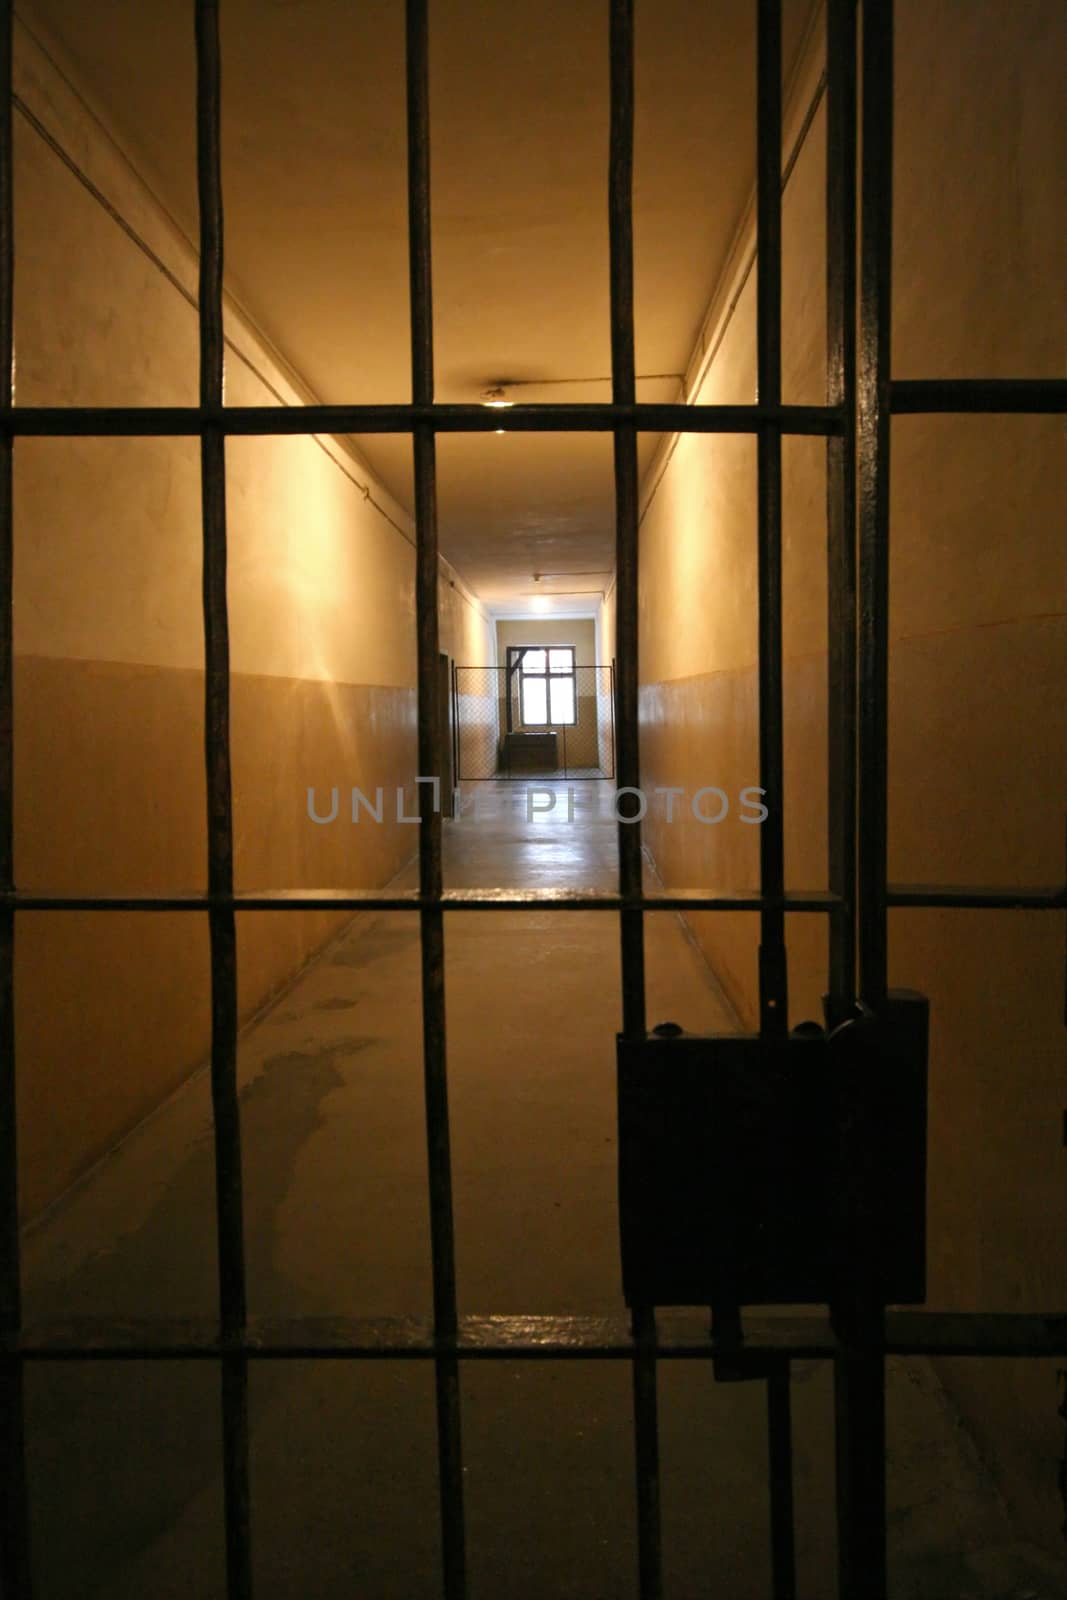 Prison gate by Aarstudio